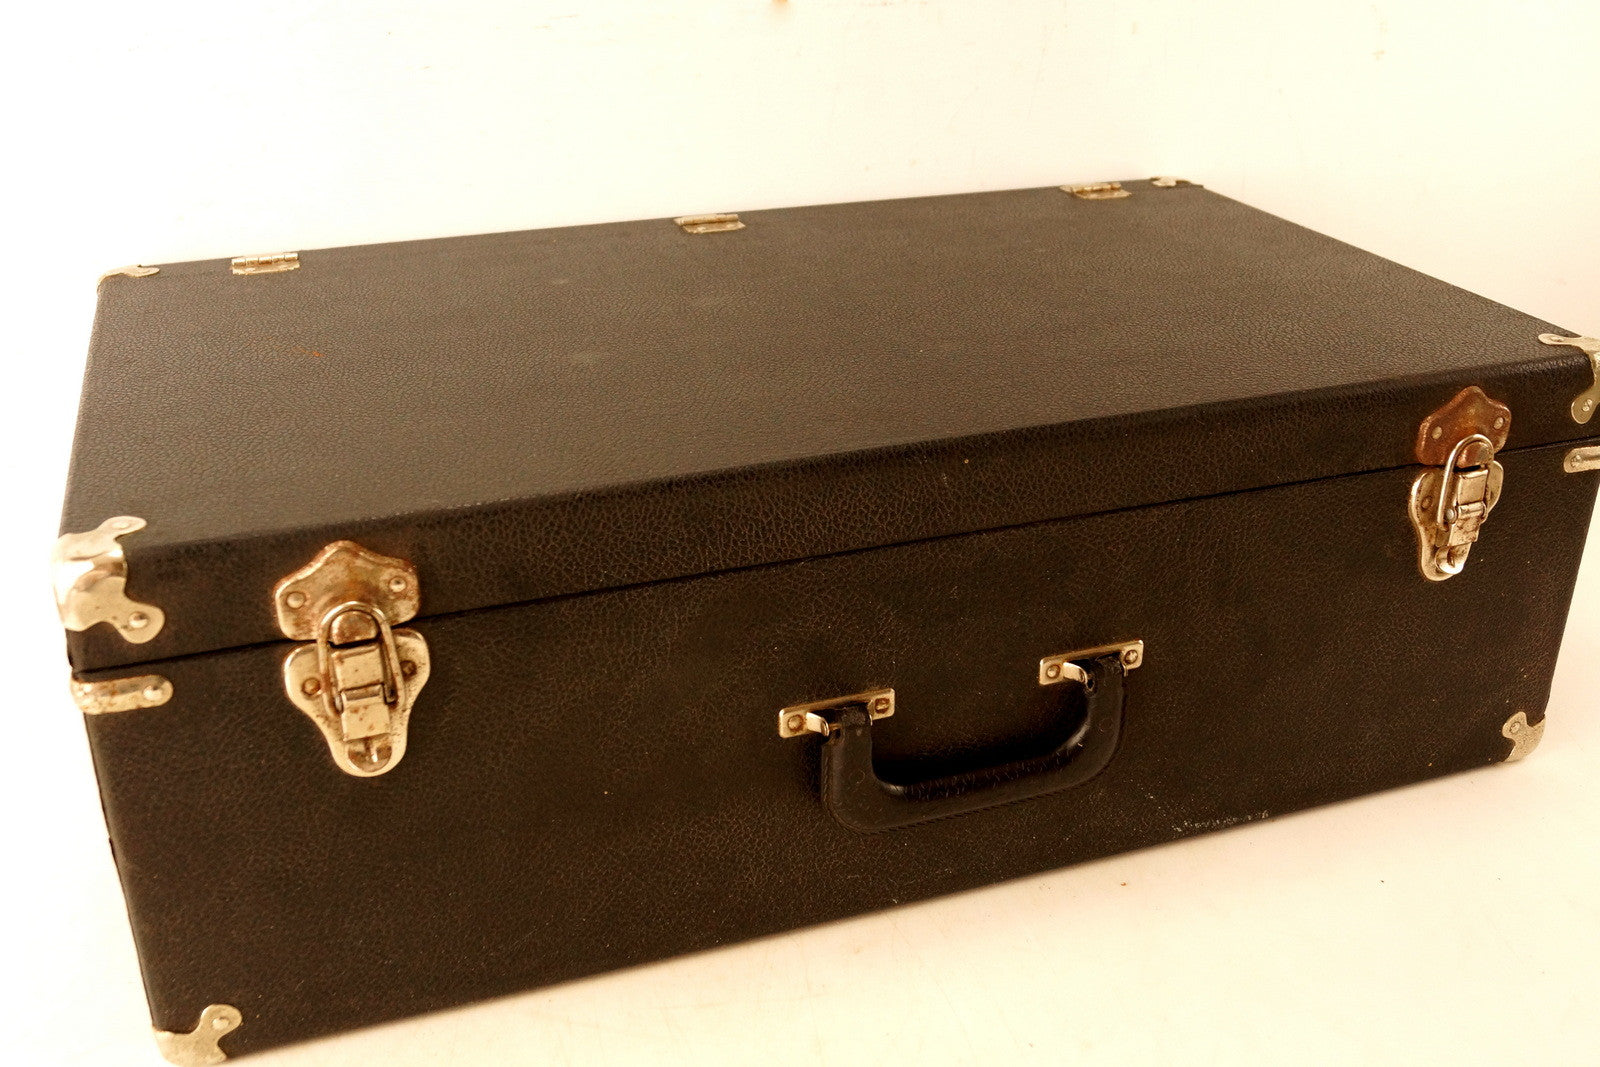 Vintage Black Suitcase with Metal Corners (c.1940s) –